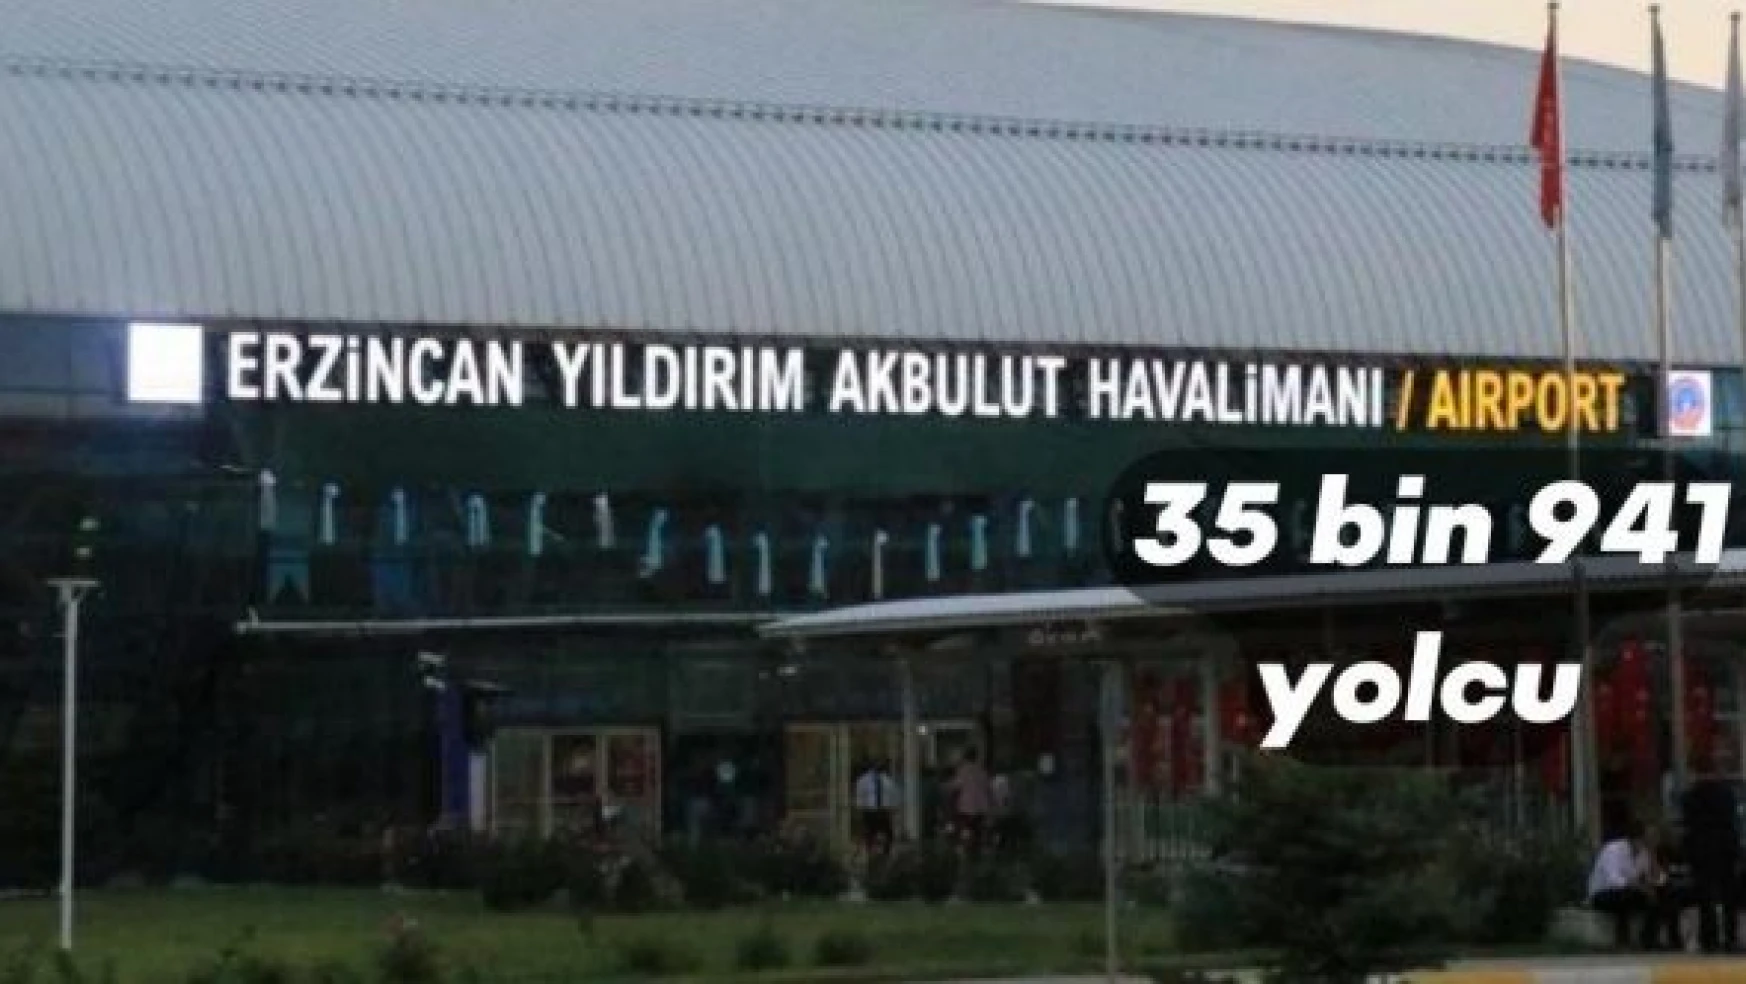 35 bin 941 yolcu Erzincan Yıldırım Akbulut Havalimanı'nı tercih etti